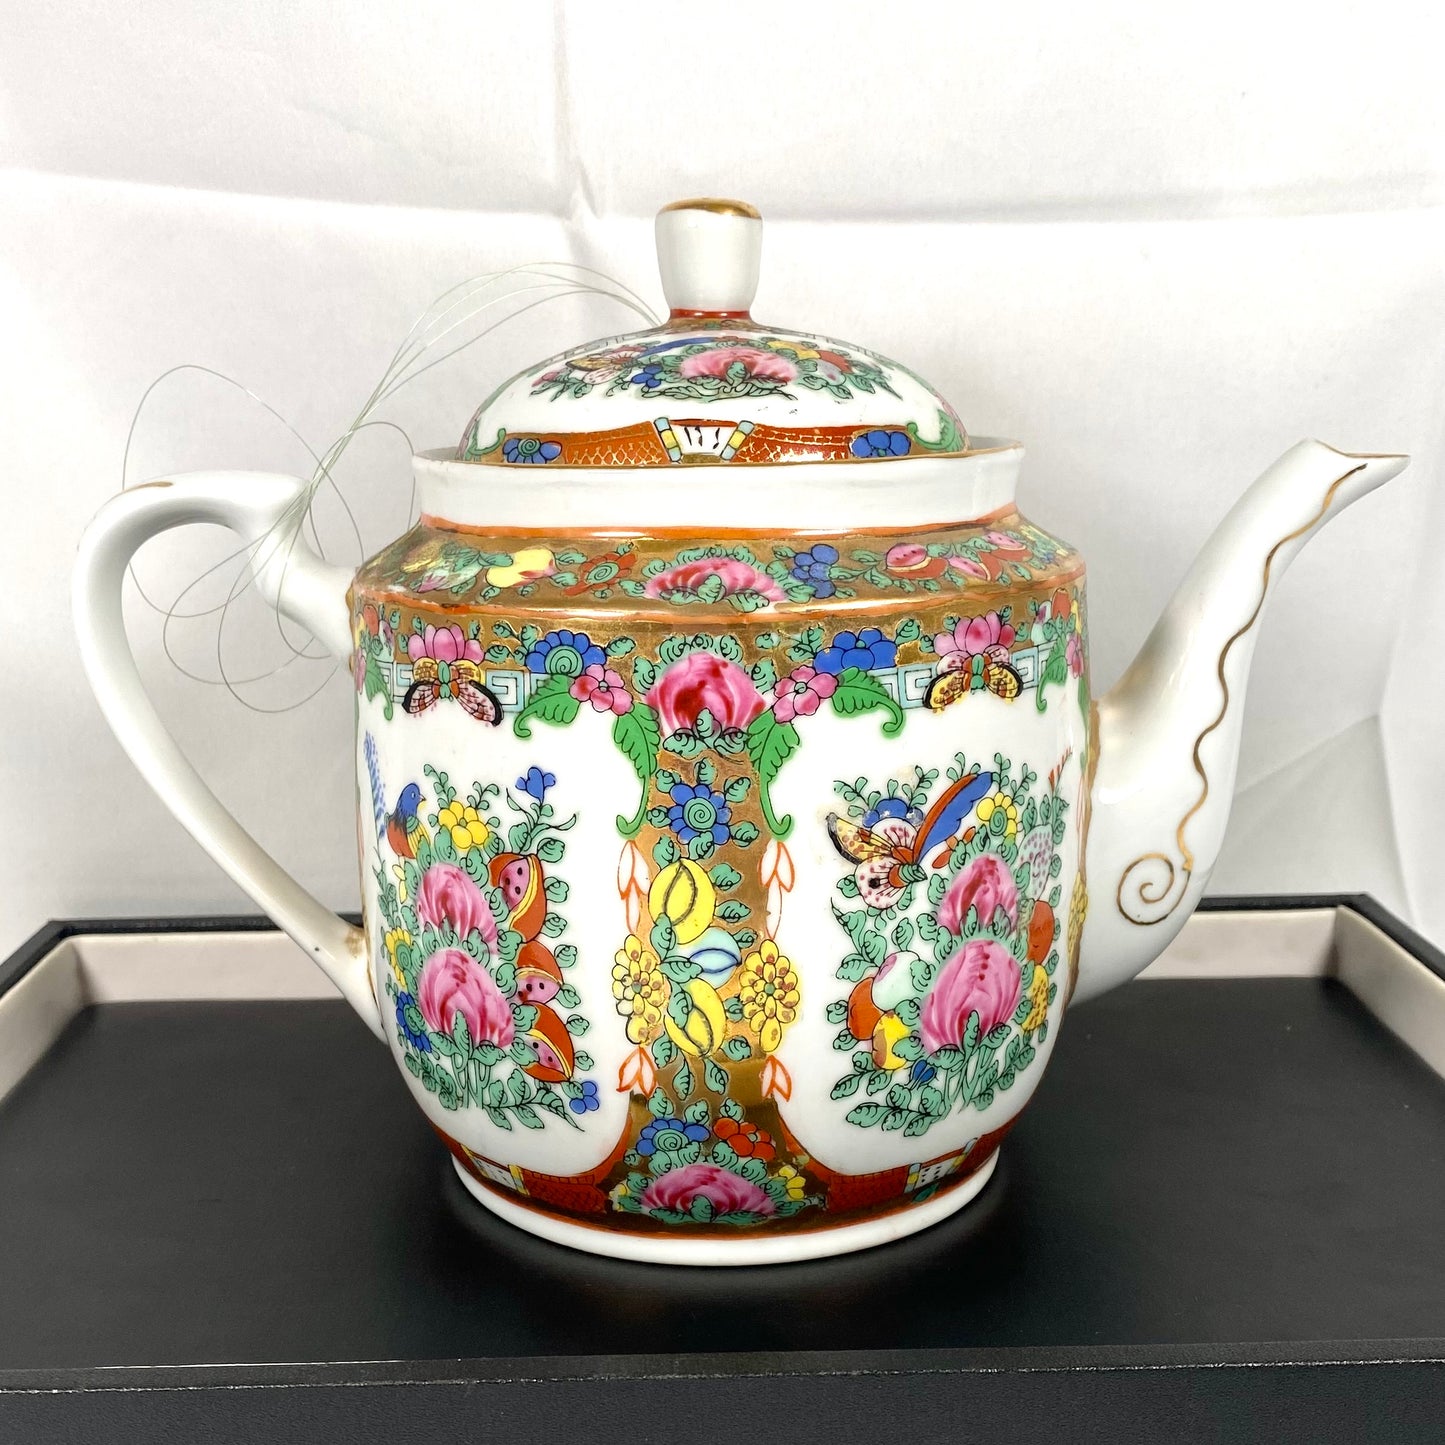 20 世纪中期中国古董茶壶，采用广式粉彩和丰富的镀金装饰